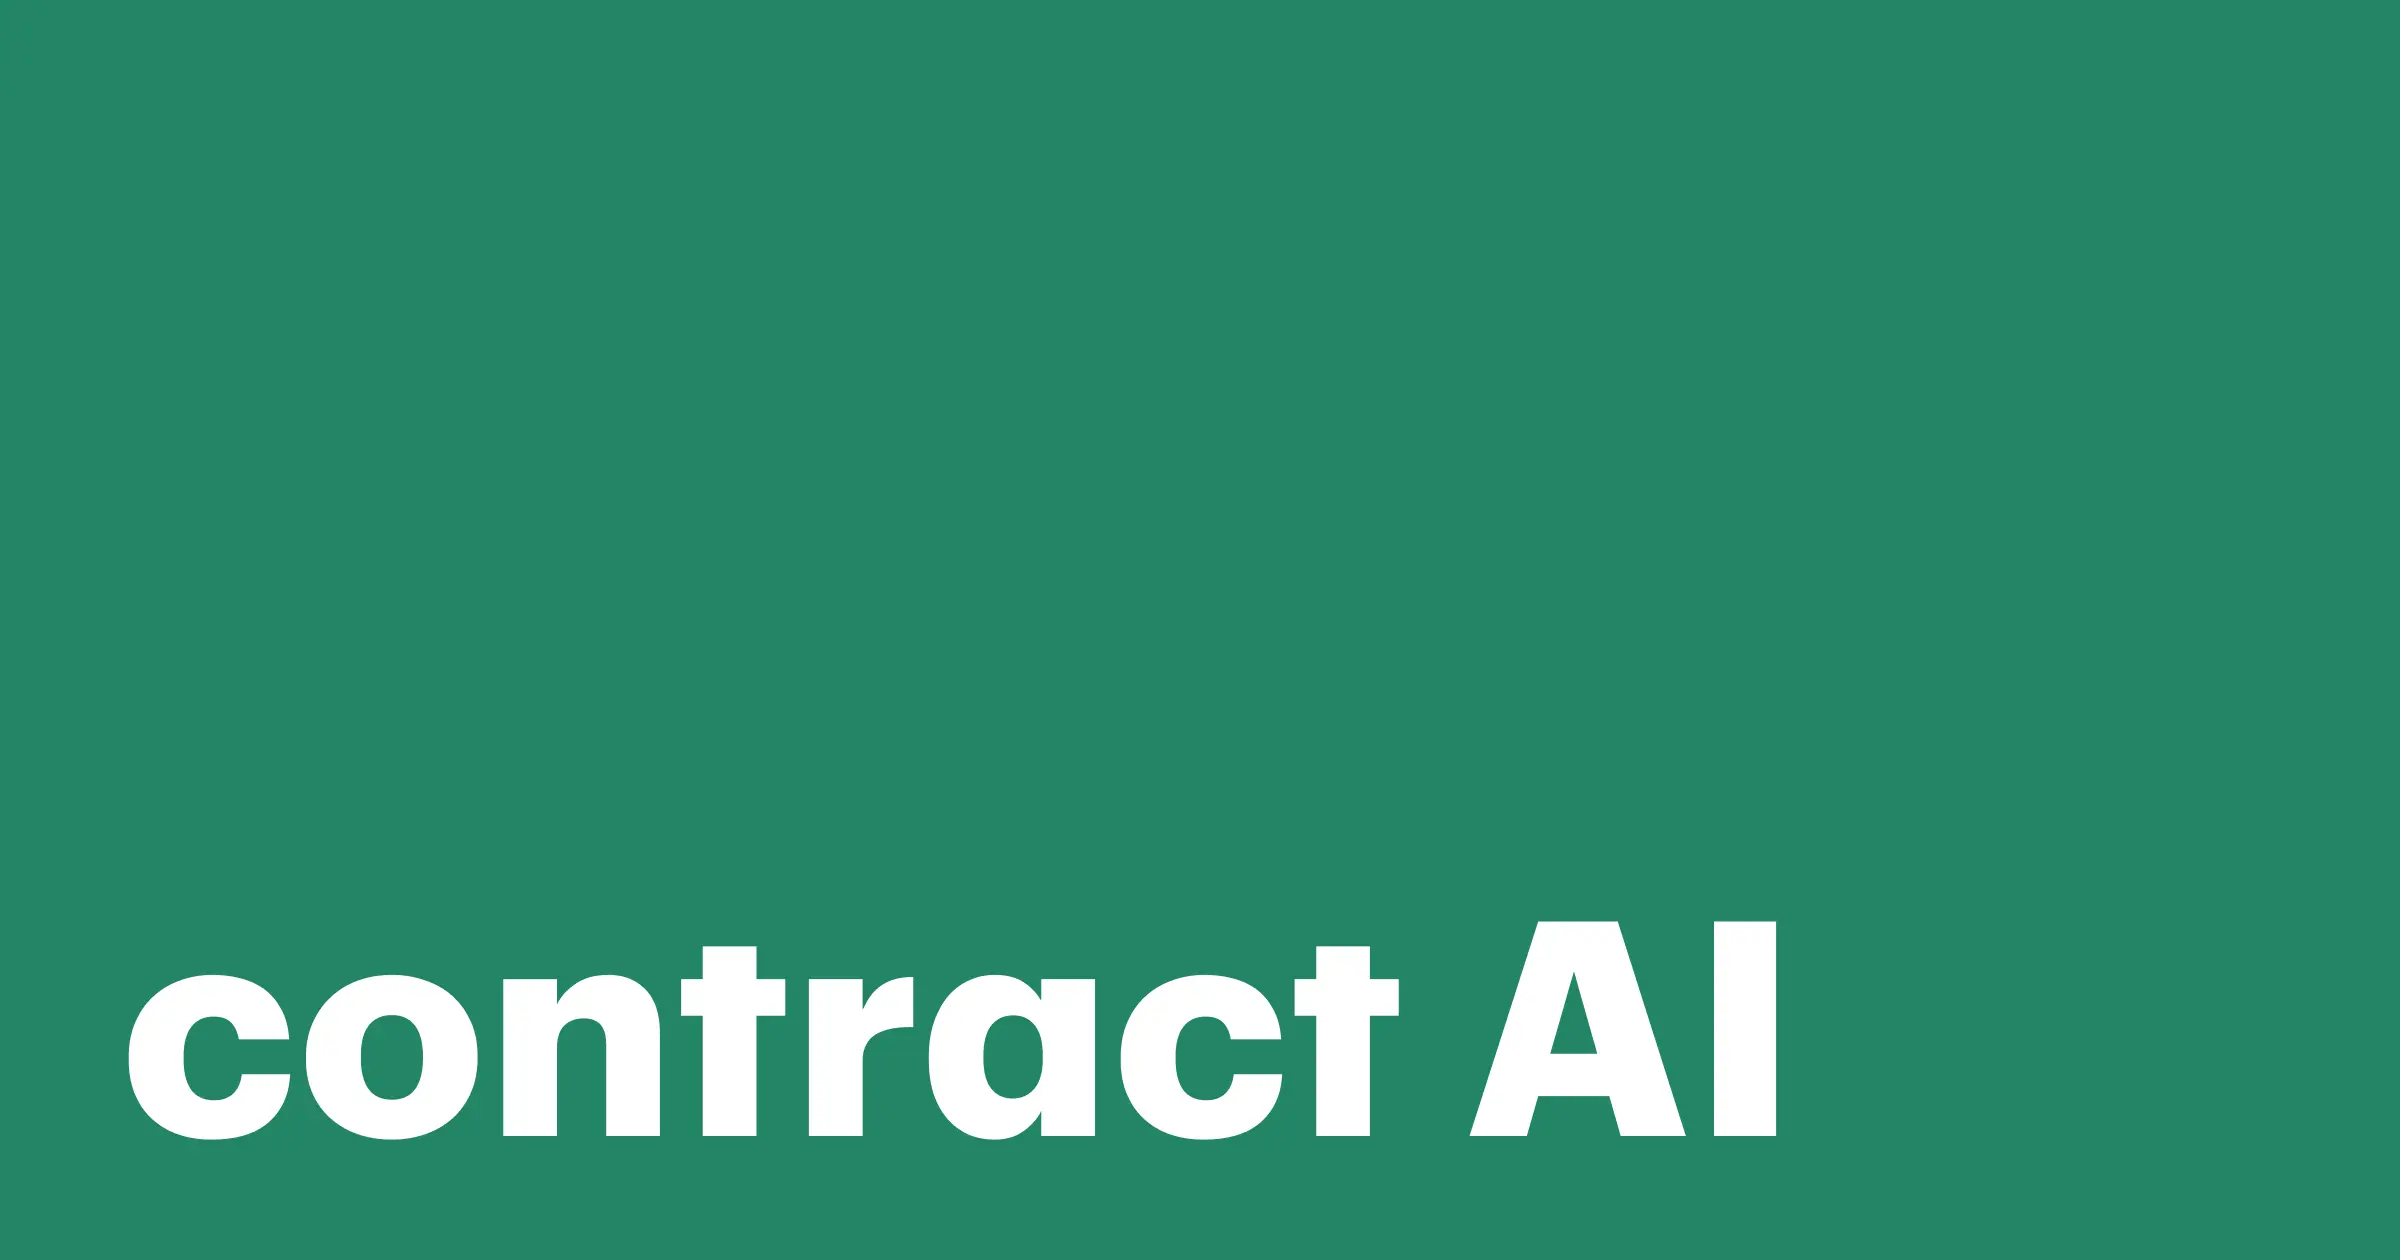 inteligencia artificial contratos - Puede la IA redactar contratos legales